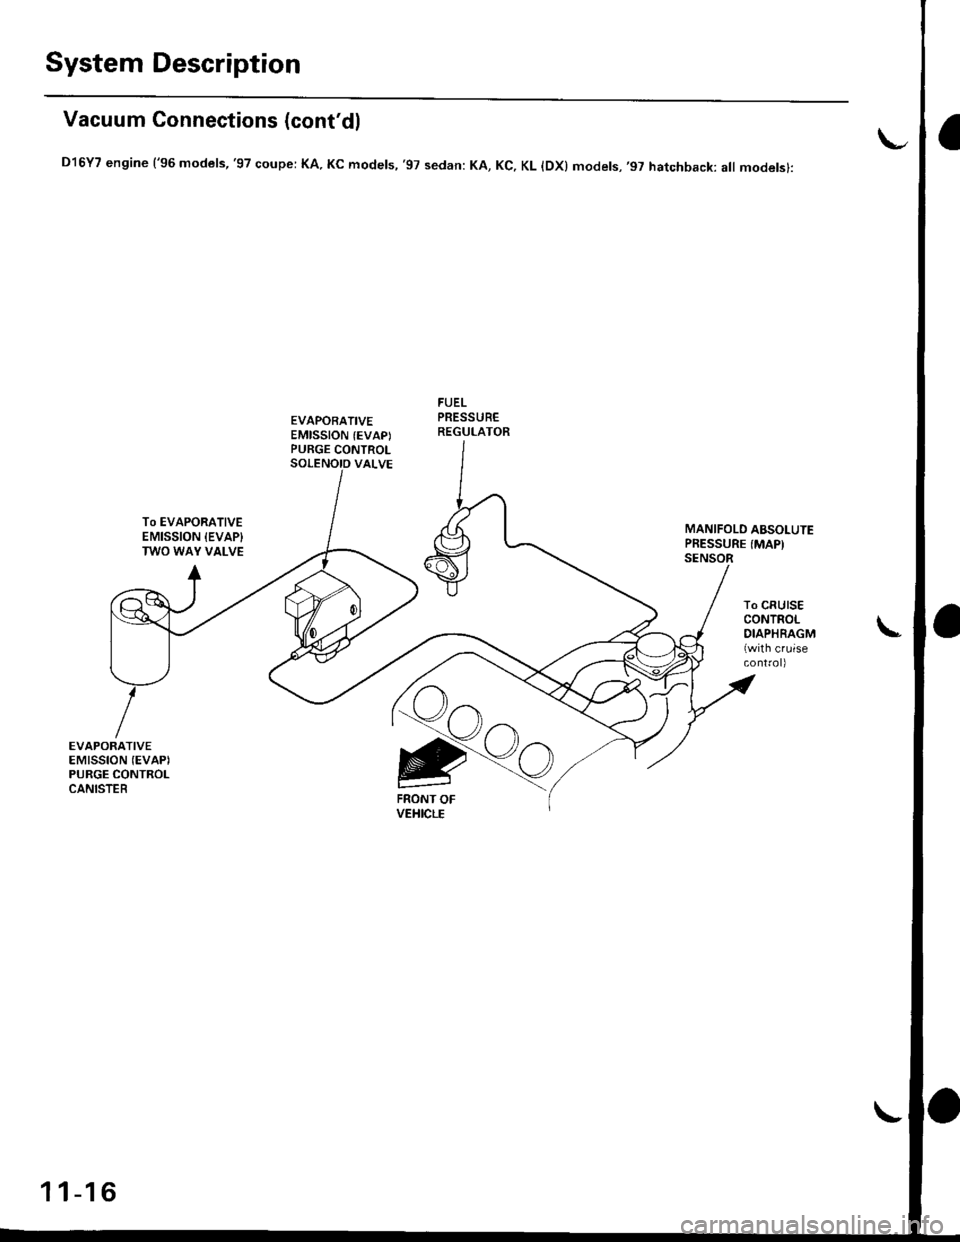 HONDA CIVIC 1998 6.G Workshop Manual System Description
Vacuum Connections (contdl
D16Y7 engine (96 models,97 coupe: KA. Kc models, 97 sedan: KA, Kc, KL lDx) models,97 hatchback: all modelsl:
EVAPORATIVEEMISSION (EVAPIPURGE CONTROL
